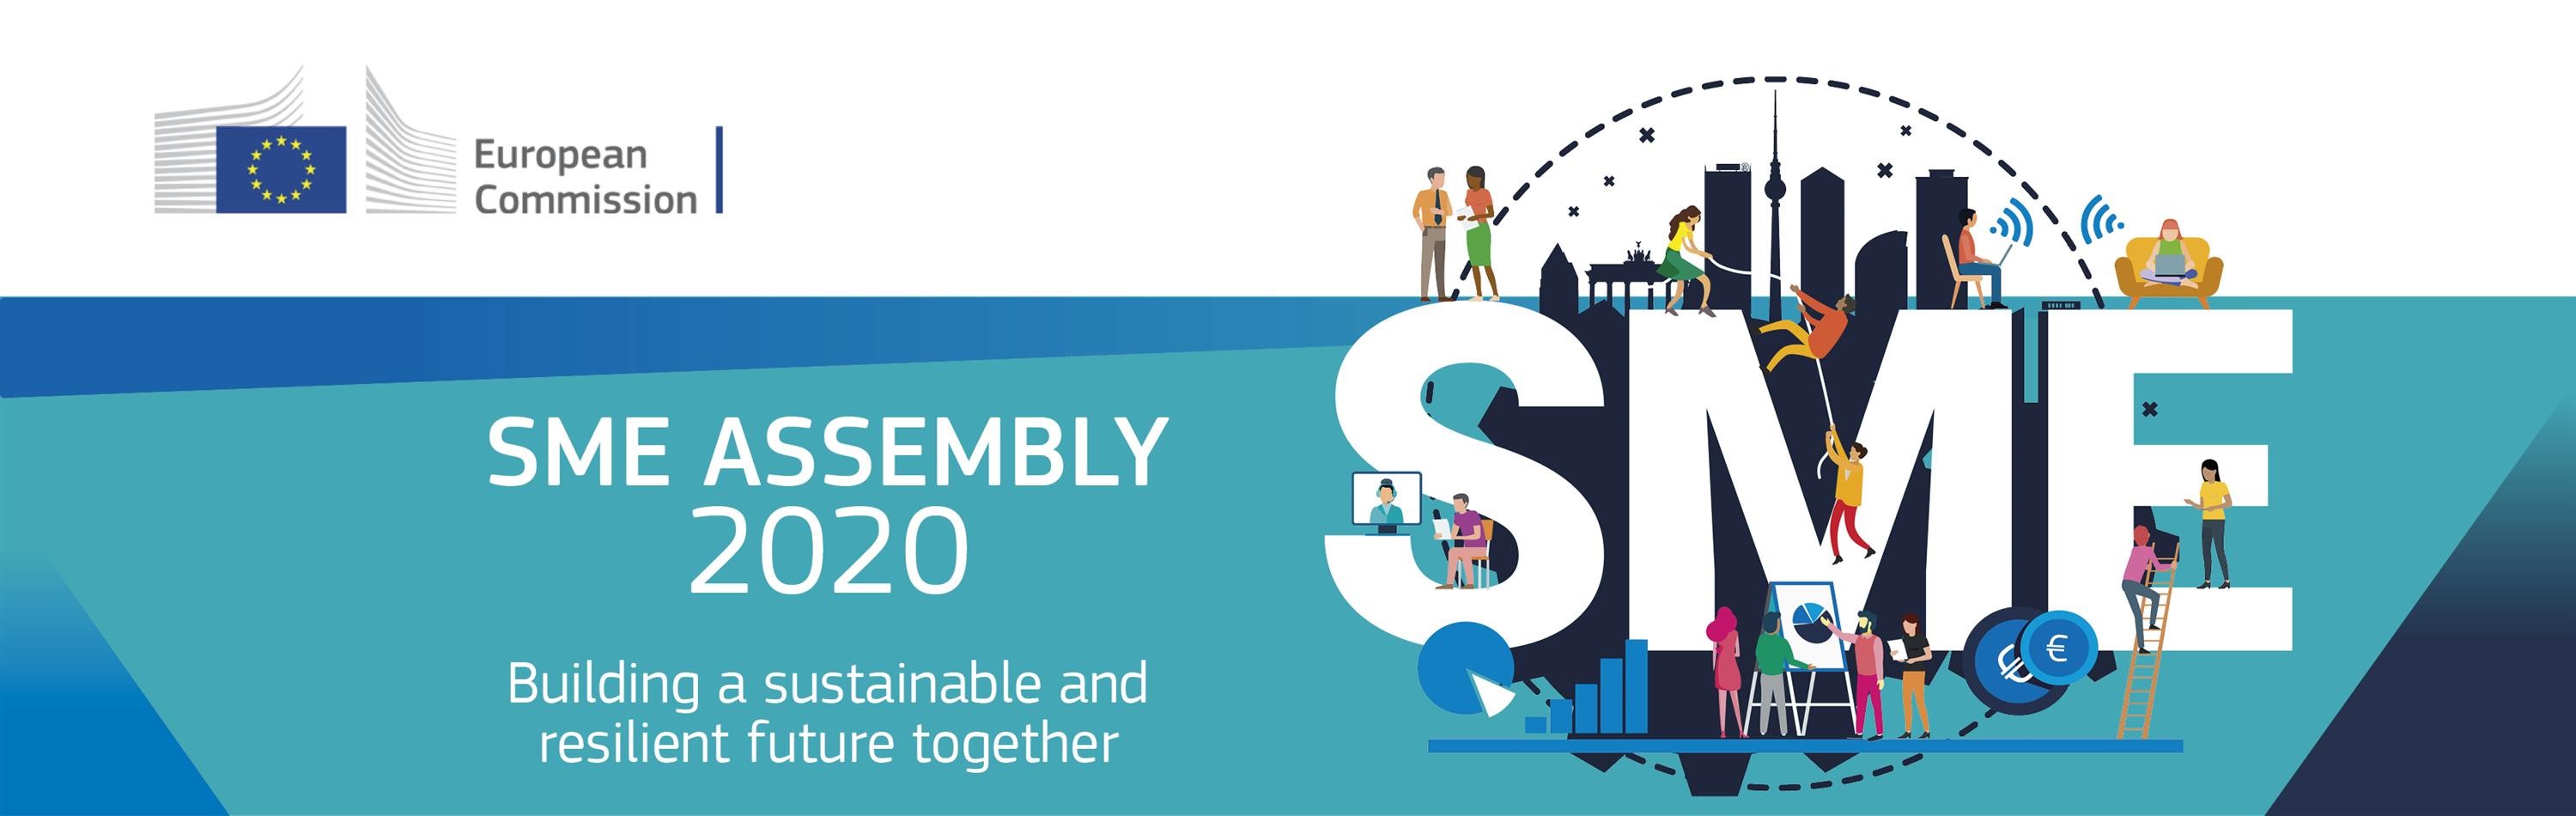 SME Assembly 2020